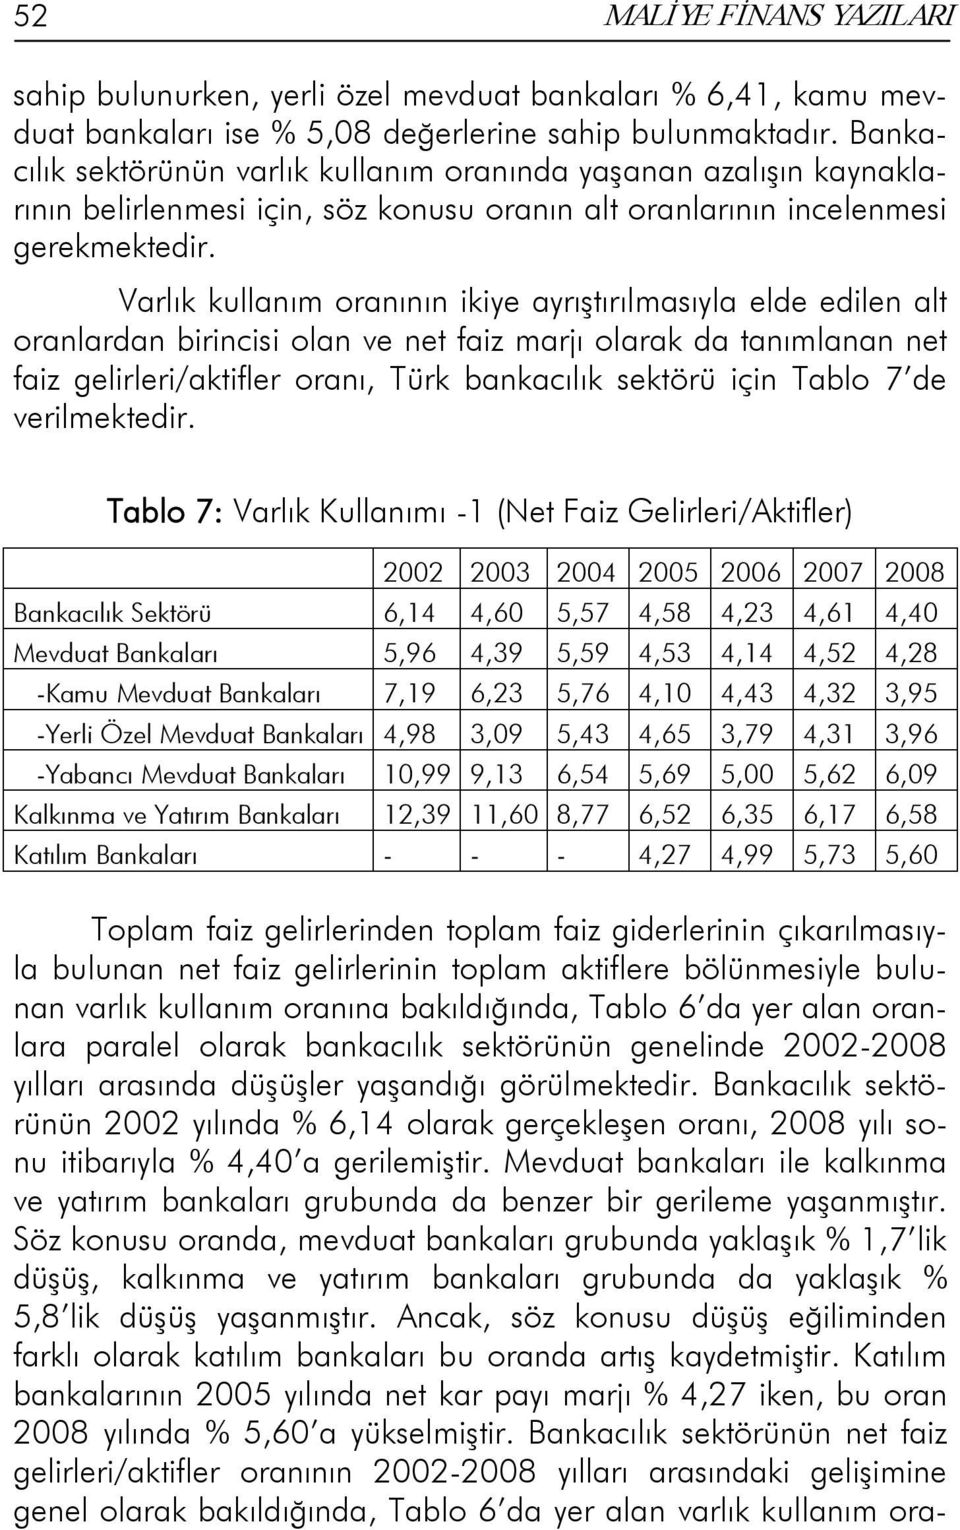 Varlık kullanım oranının ikiye ayrıştırılmasıyla elde edilen alt oranlardan birincisi olan ve net faiz marjı olarak da tanımlanan net faiz gelirleri/aktifler oranı, Türk bankacılık sektörü için Tablo